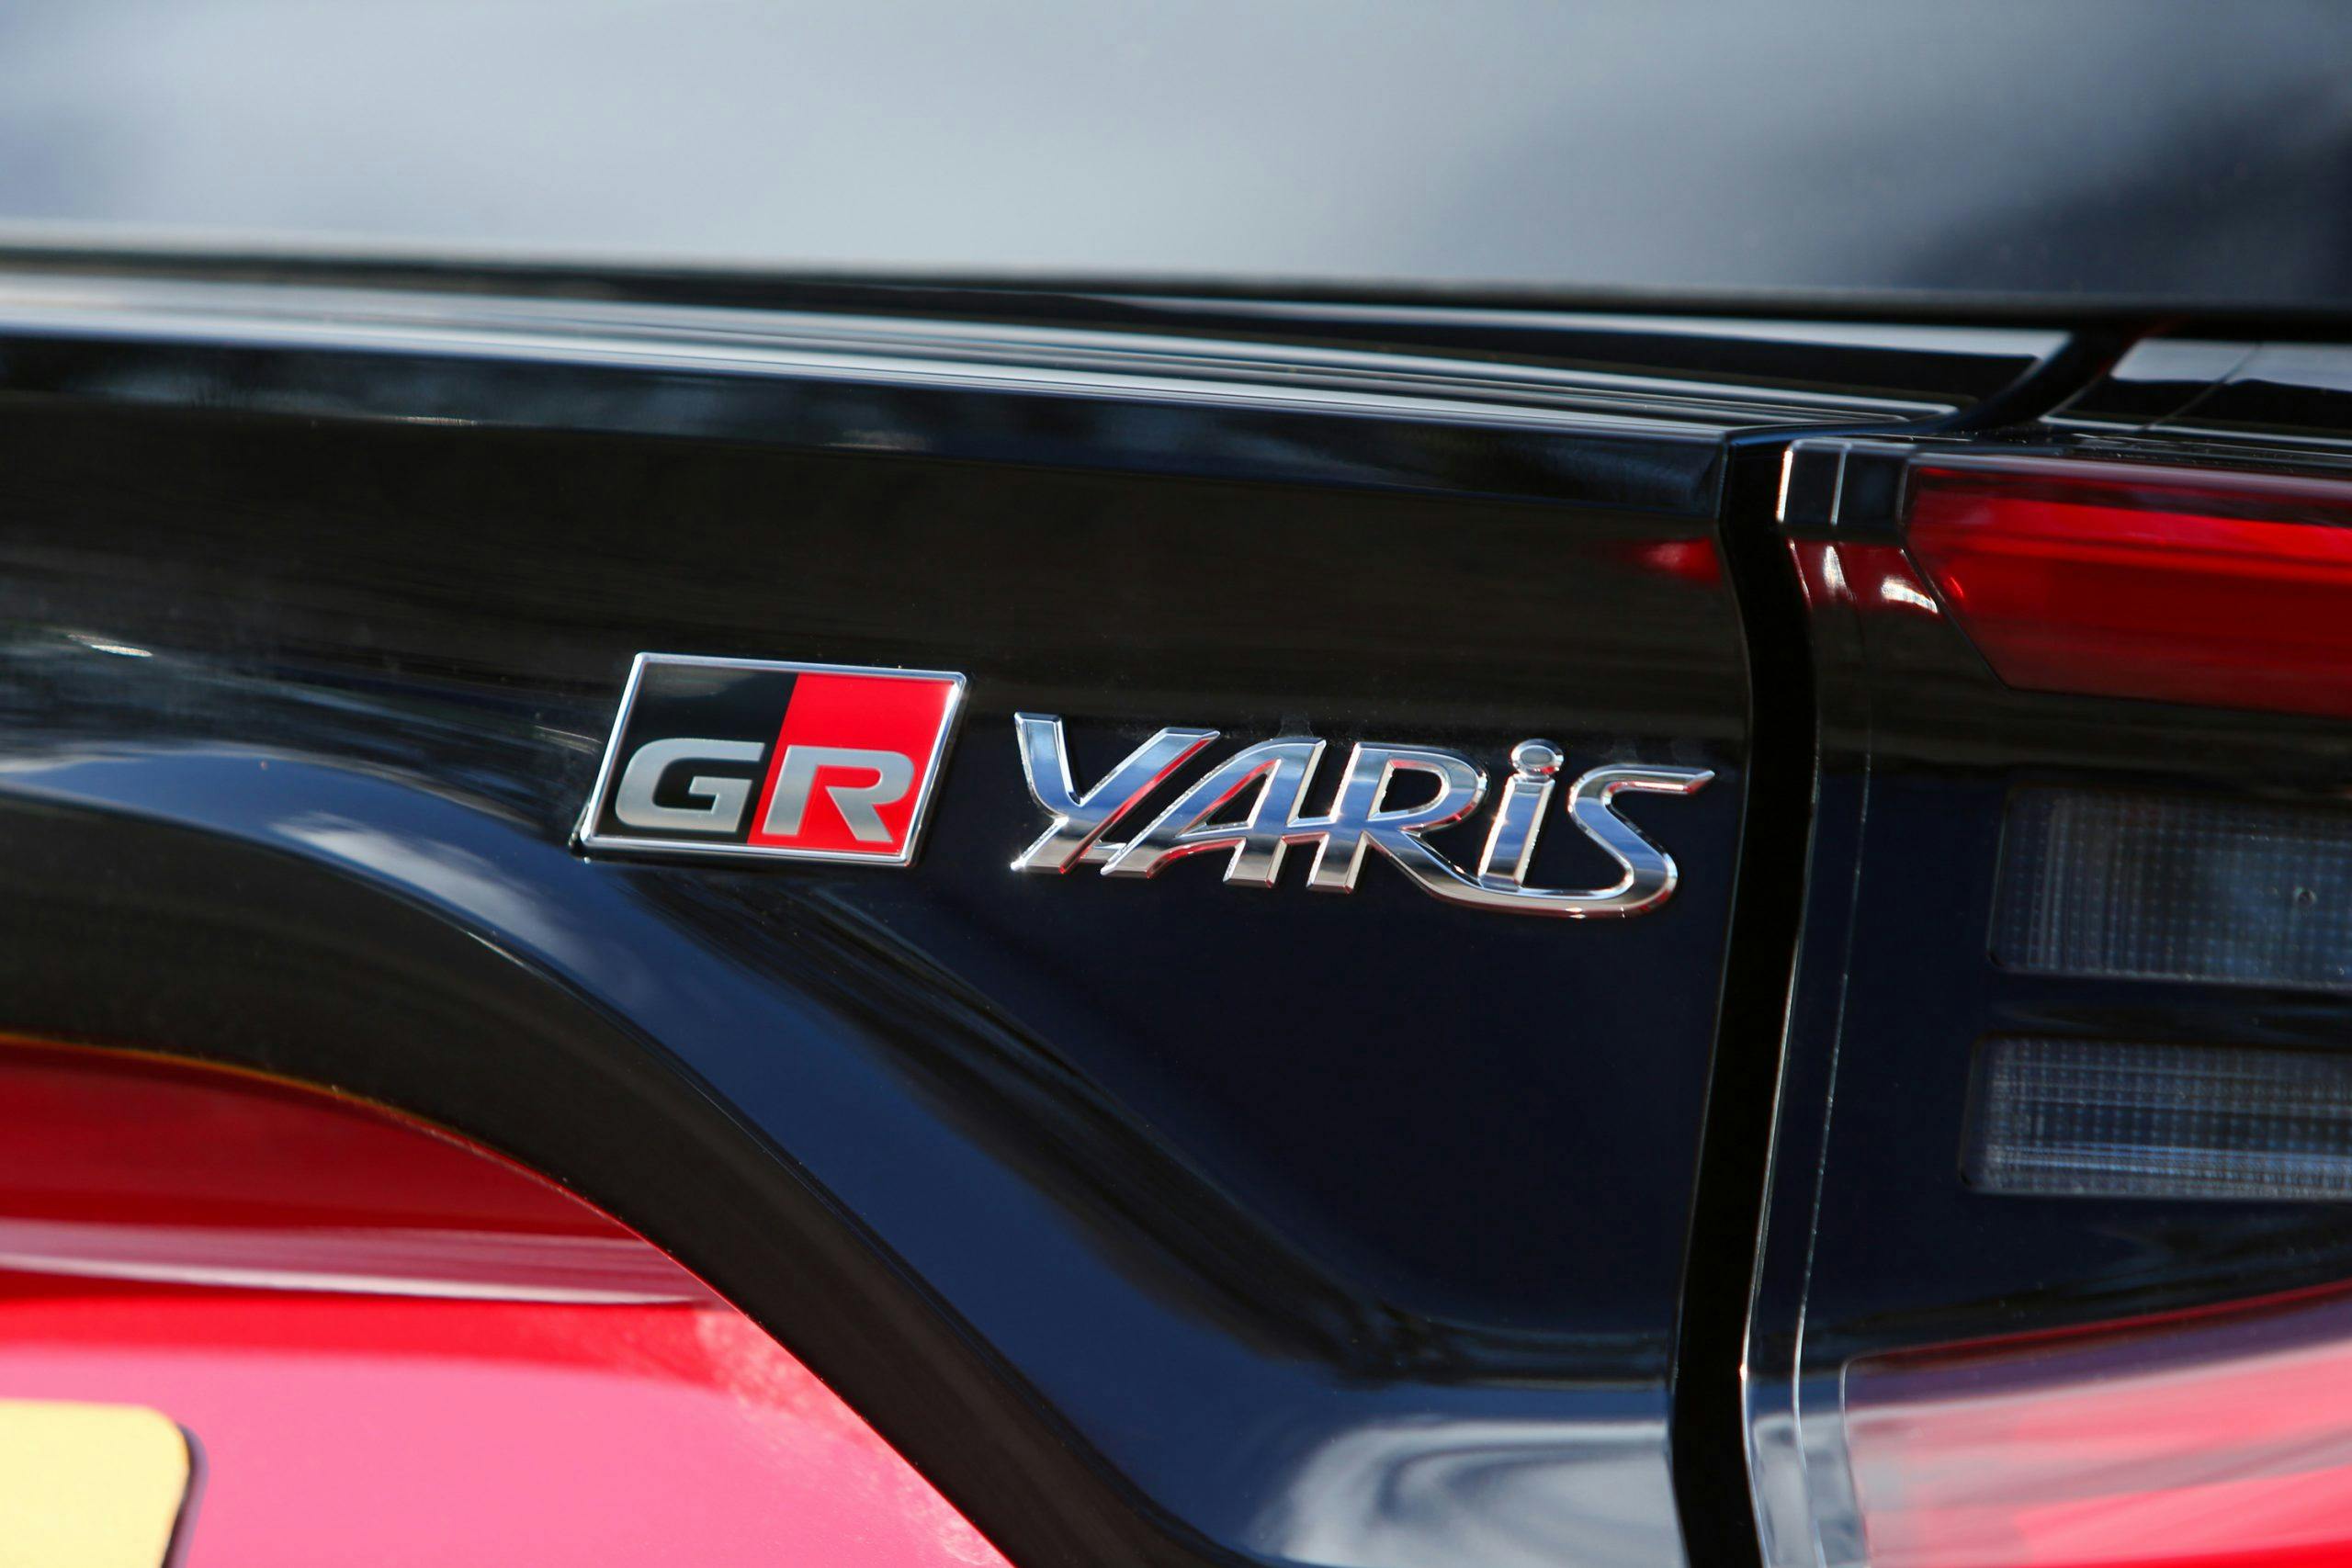 GR Toyota Yaris badging detail